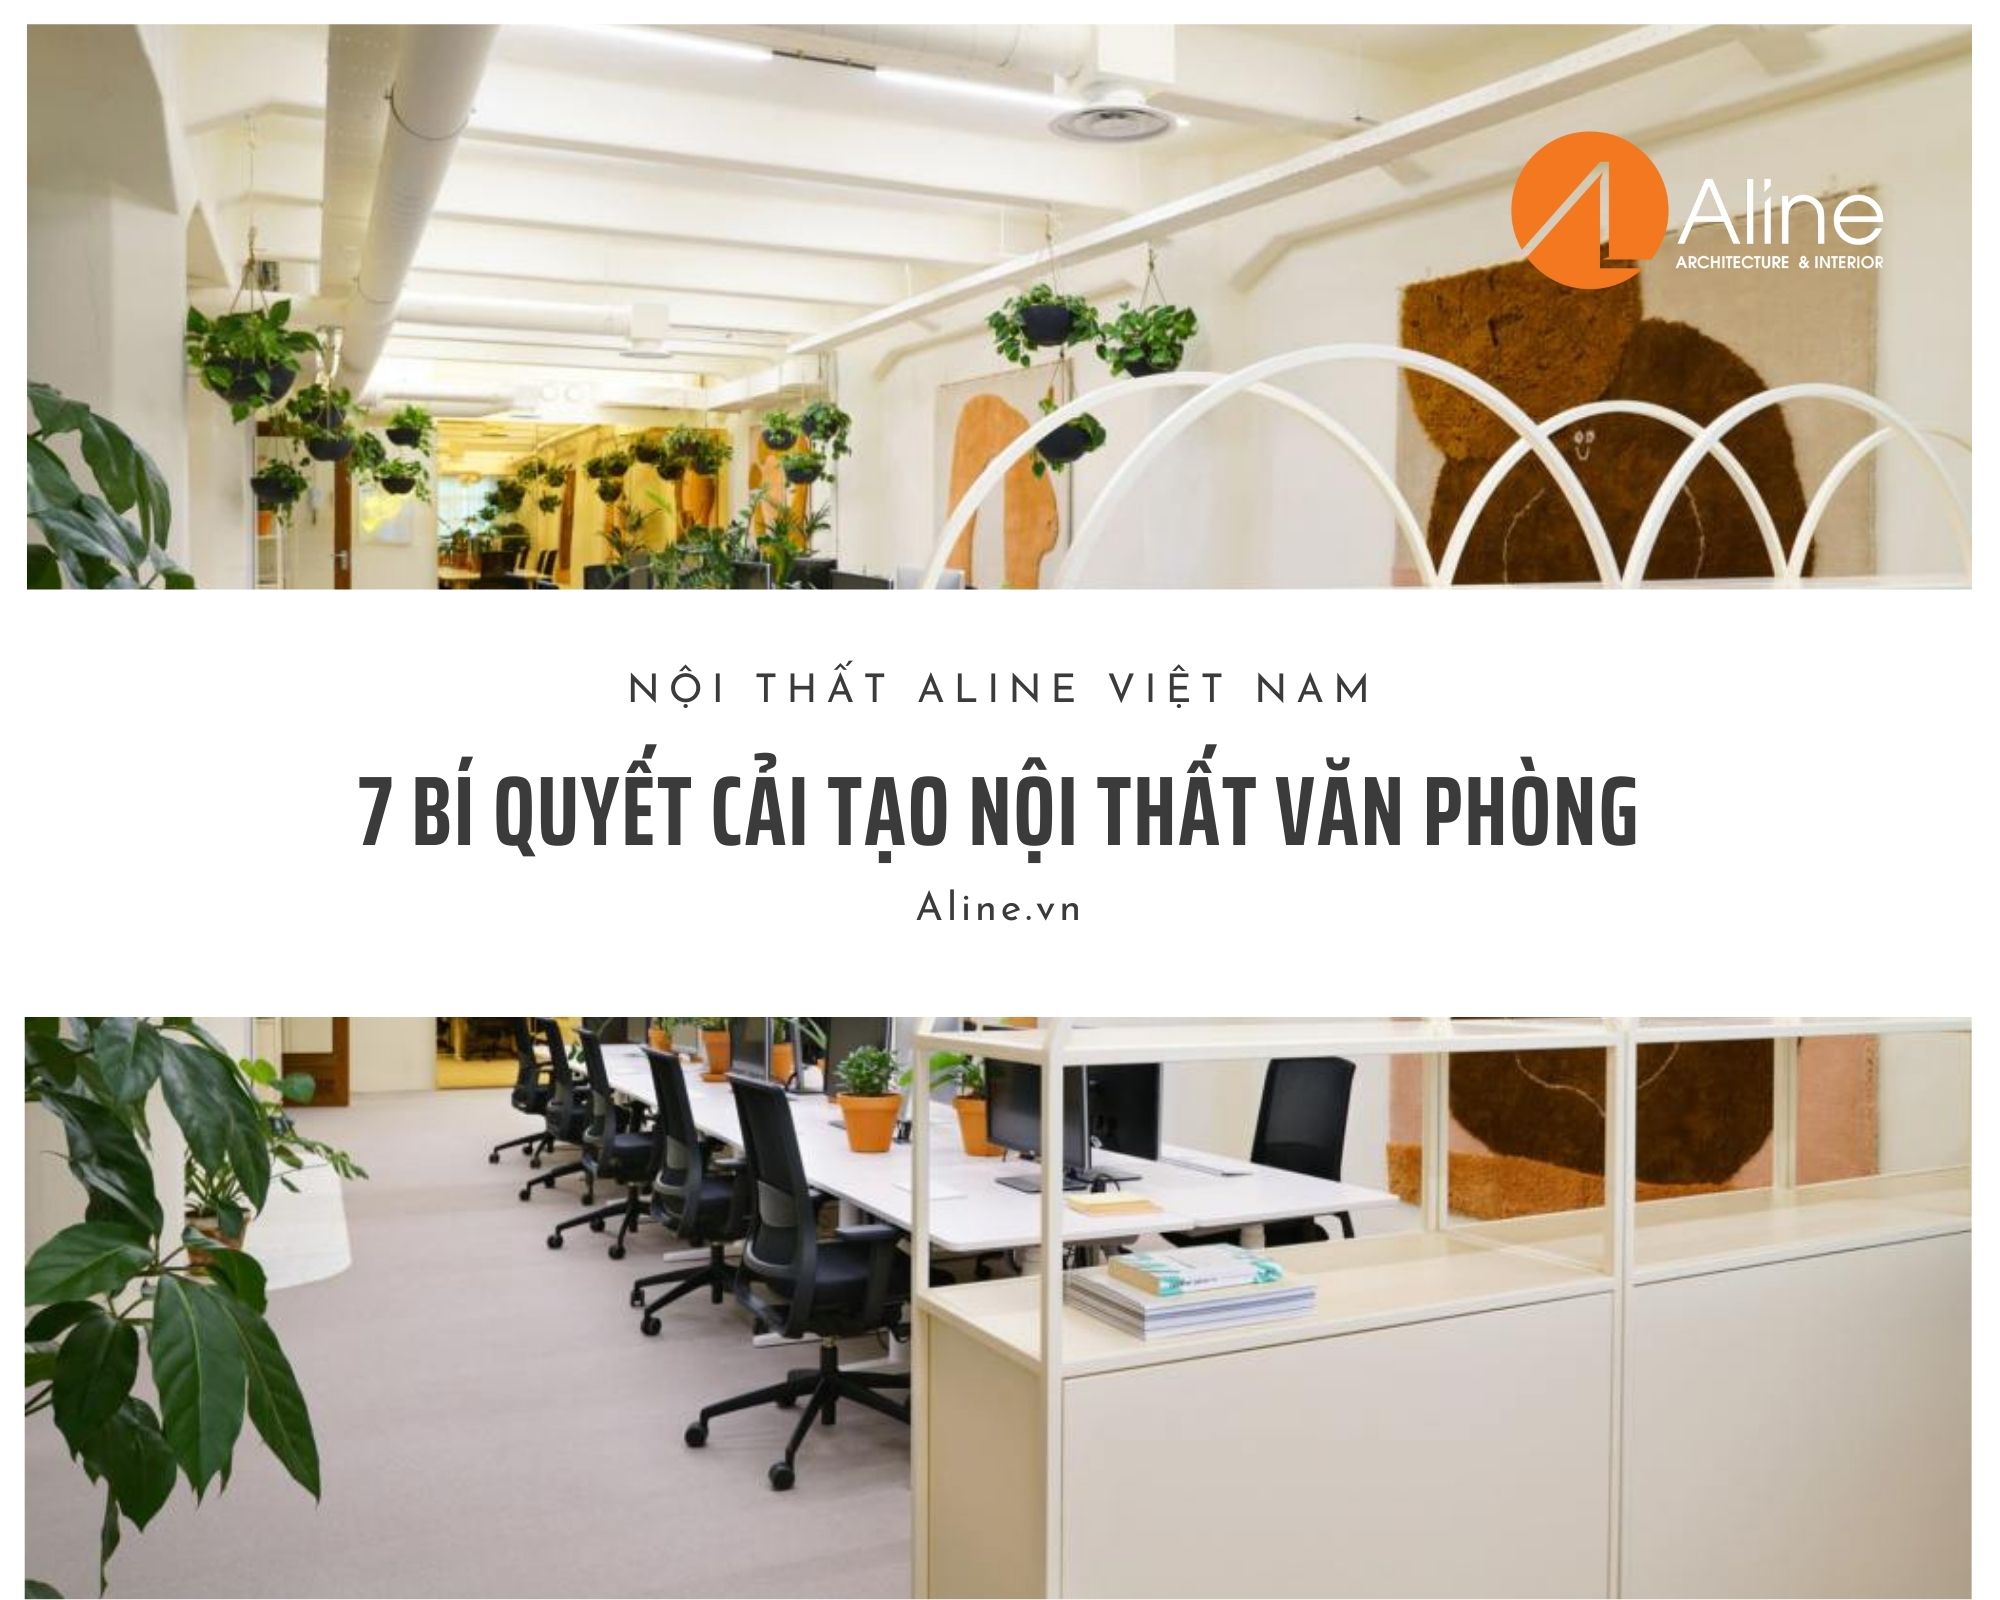 7 Bí quyết cải tạo nội thất văn phòng